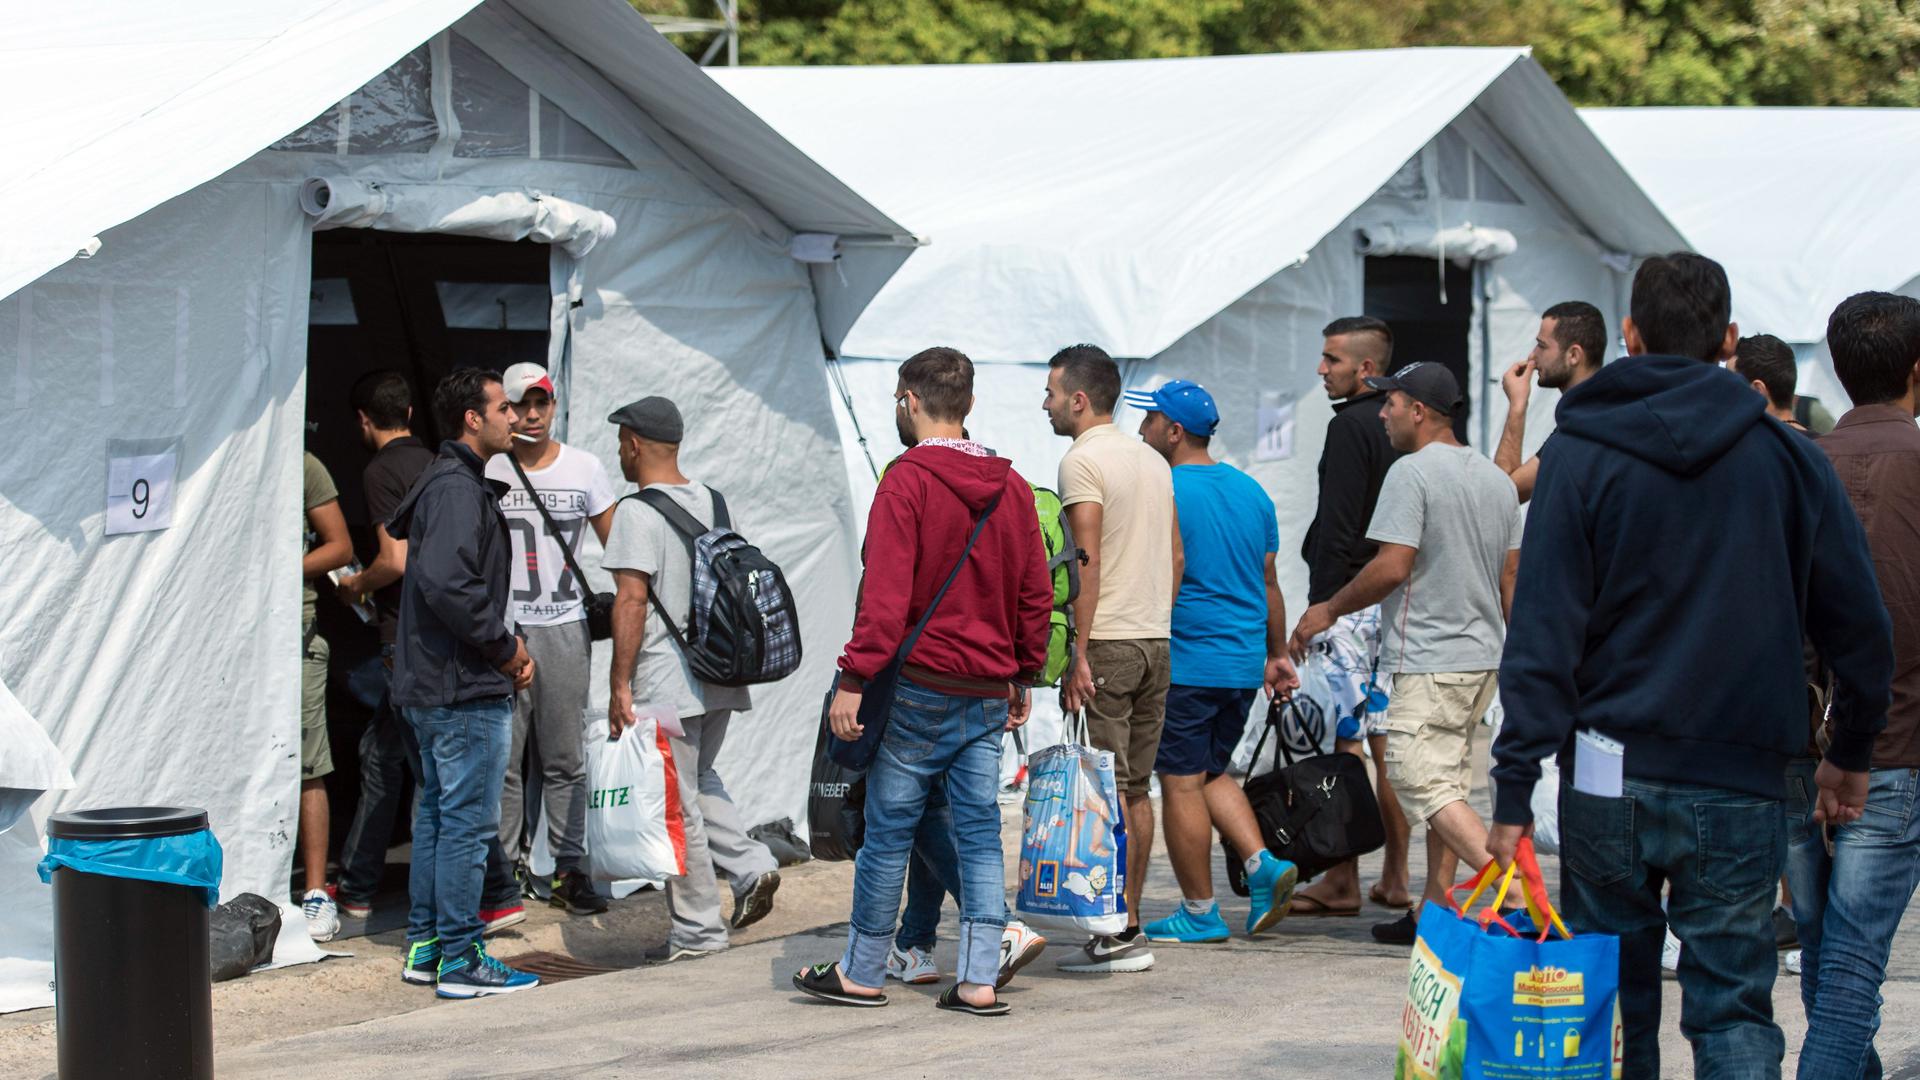 Flüchtlinge beziehen am 02.08.2015 in Neuenstadt am Kocher (Baden-Württemberg) ein temporäres Zeltlager. Die Flüchtlinge wurden in zwei Bussen von der überfüllten Erstaufnahmestelle in Ellwangen in das Lager, welches bis zu 200 Flüchtlingen Platz bietet, gebracht. Foto: Daniel Maurer/dpa ++ +++ dpa-Bildfunk +++